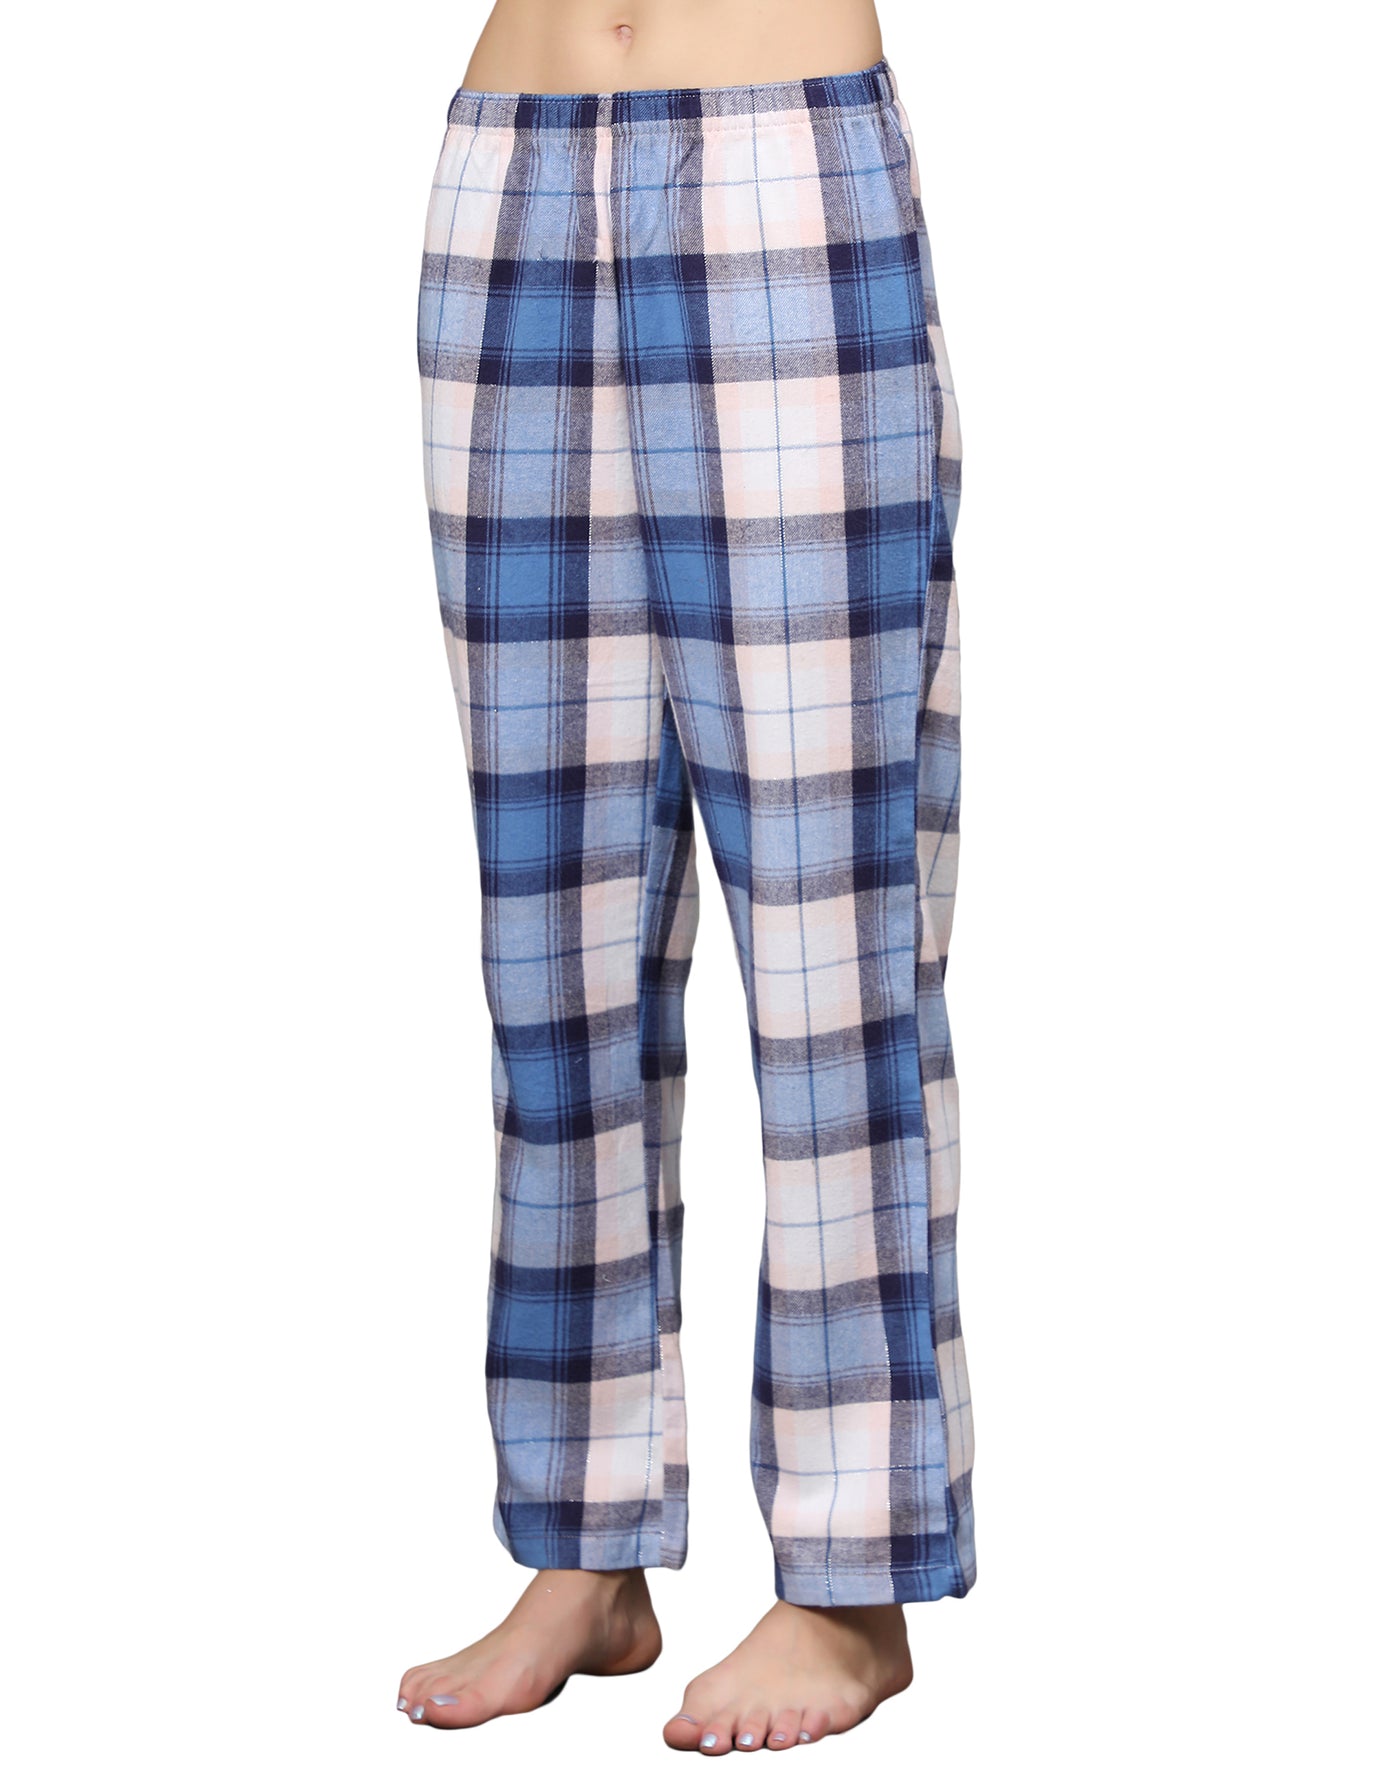 Pyjama Set for Women-Astrodonut Print